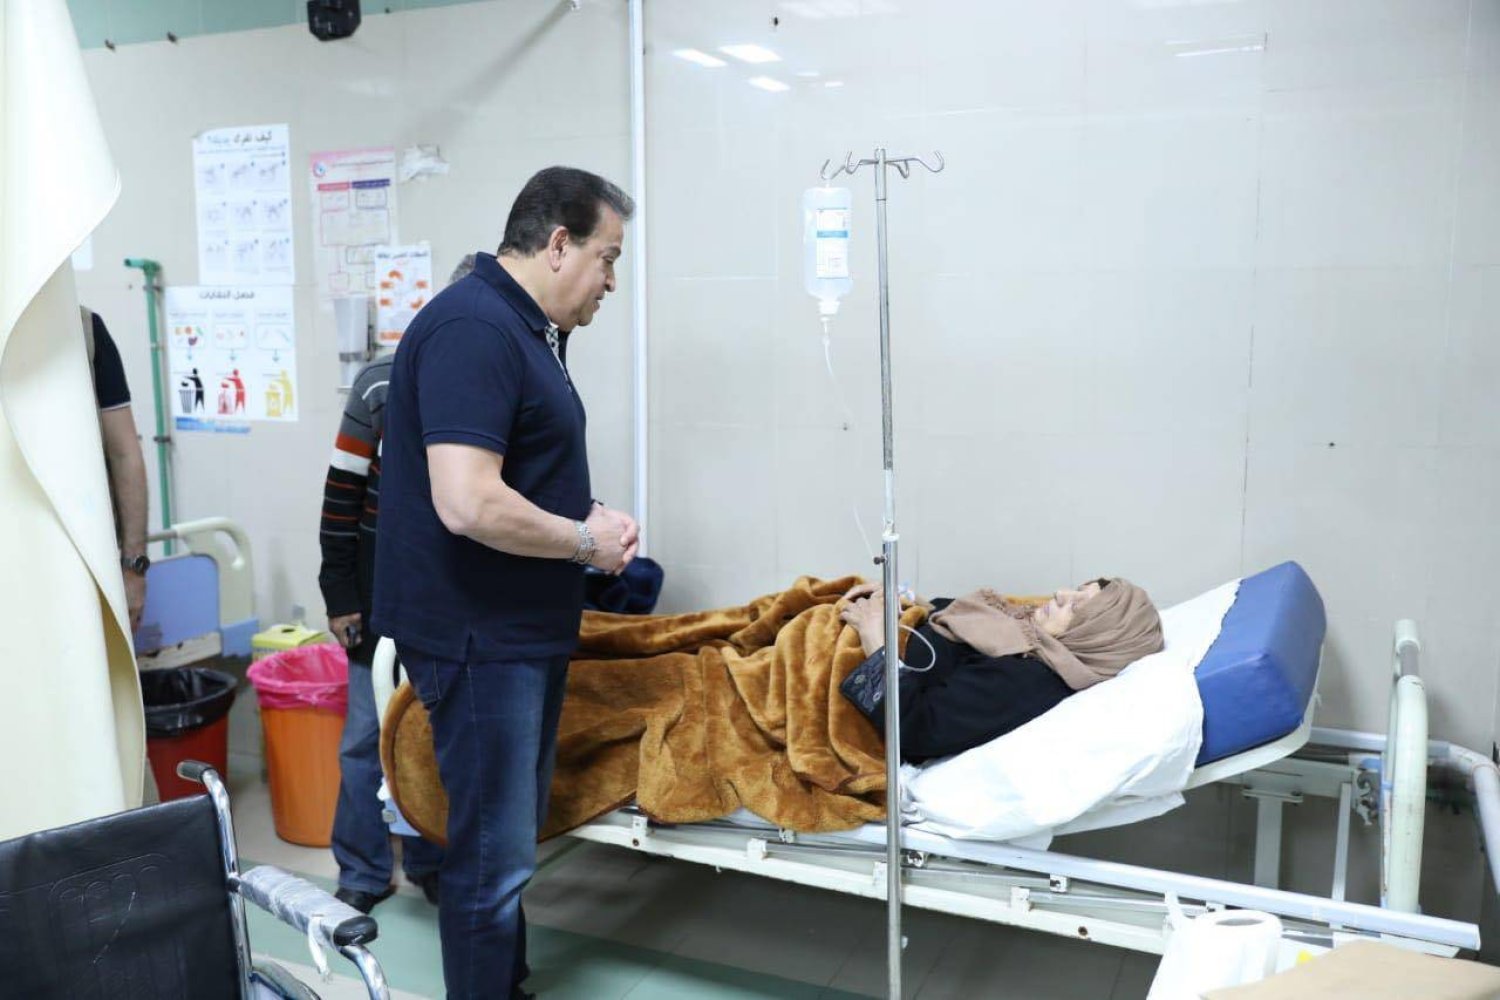 وزير الصحة المصري في جولة داخل مستشفى «6 أكتوبر» للتأمين الصحي بالدقي (وزارة الصحة)